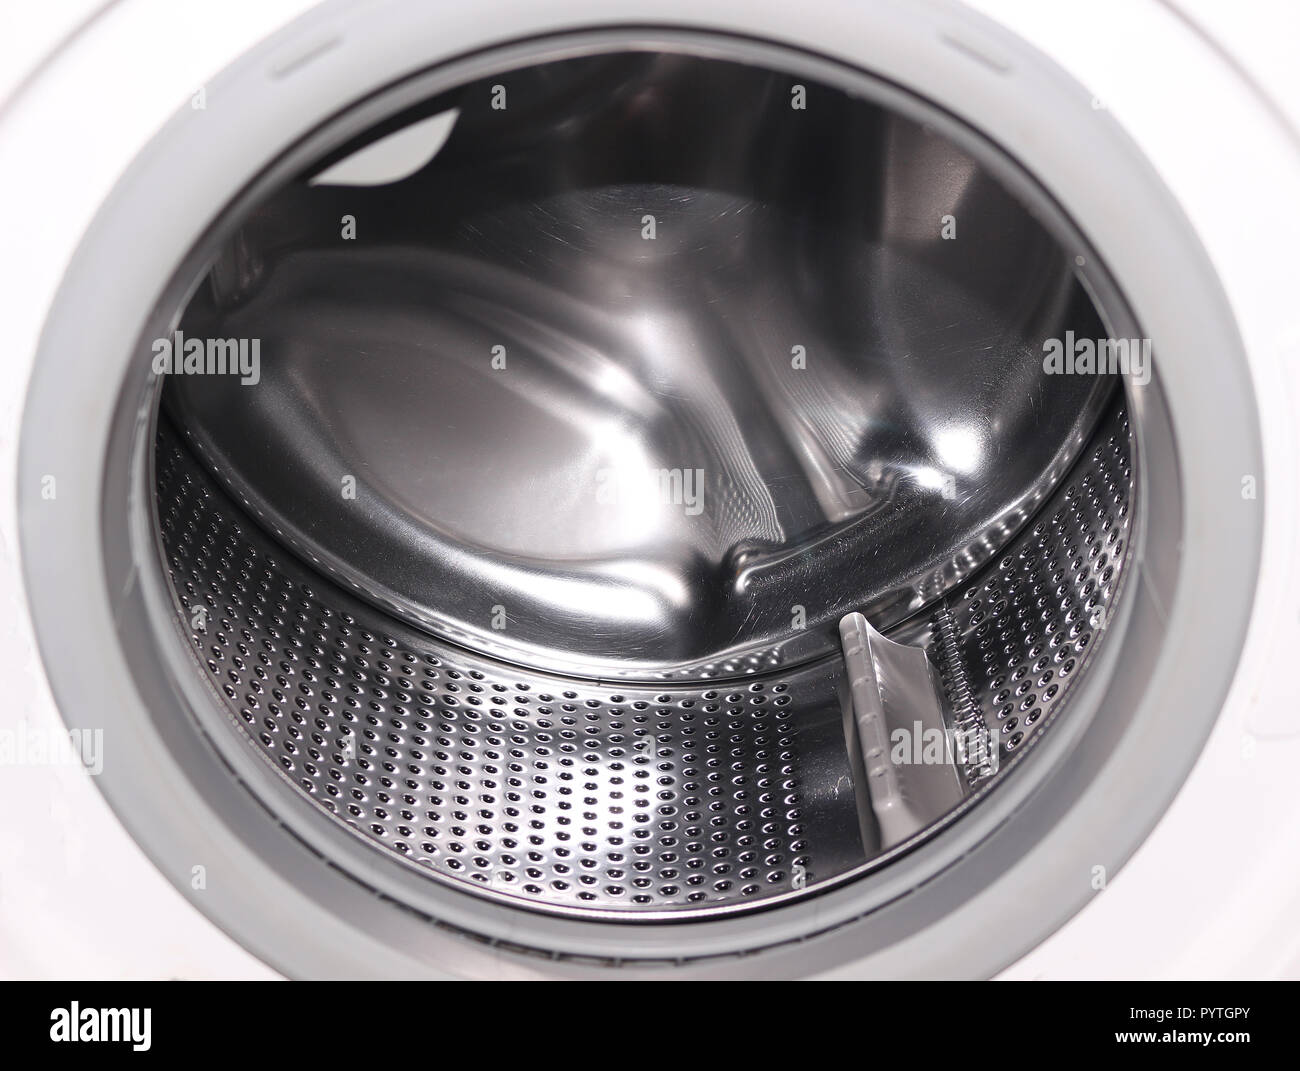 Im Inneren der Trommel einer Waschmaschine Stockfotografie - Alamy